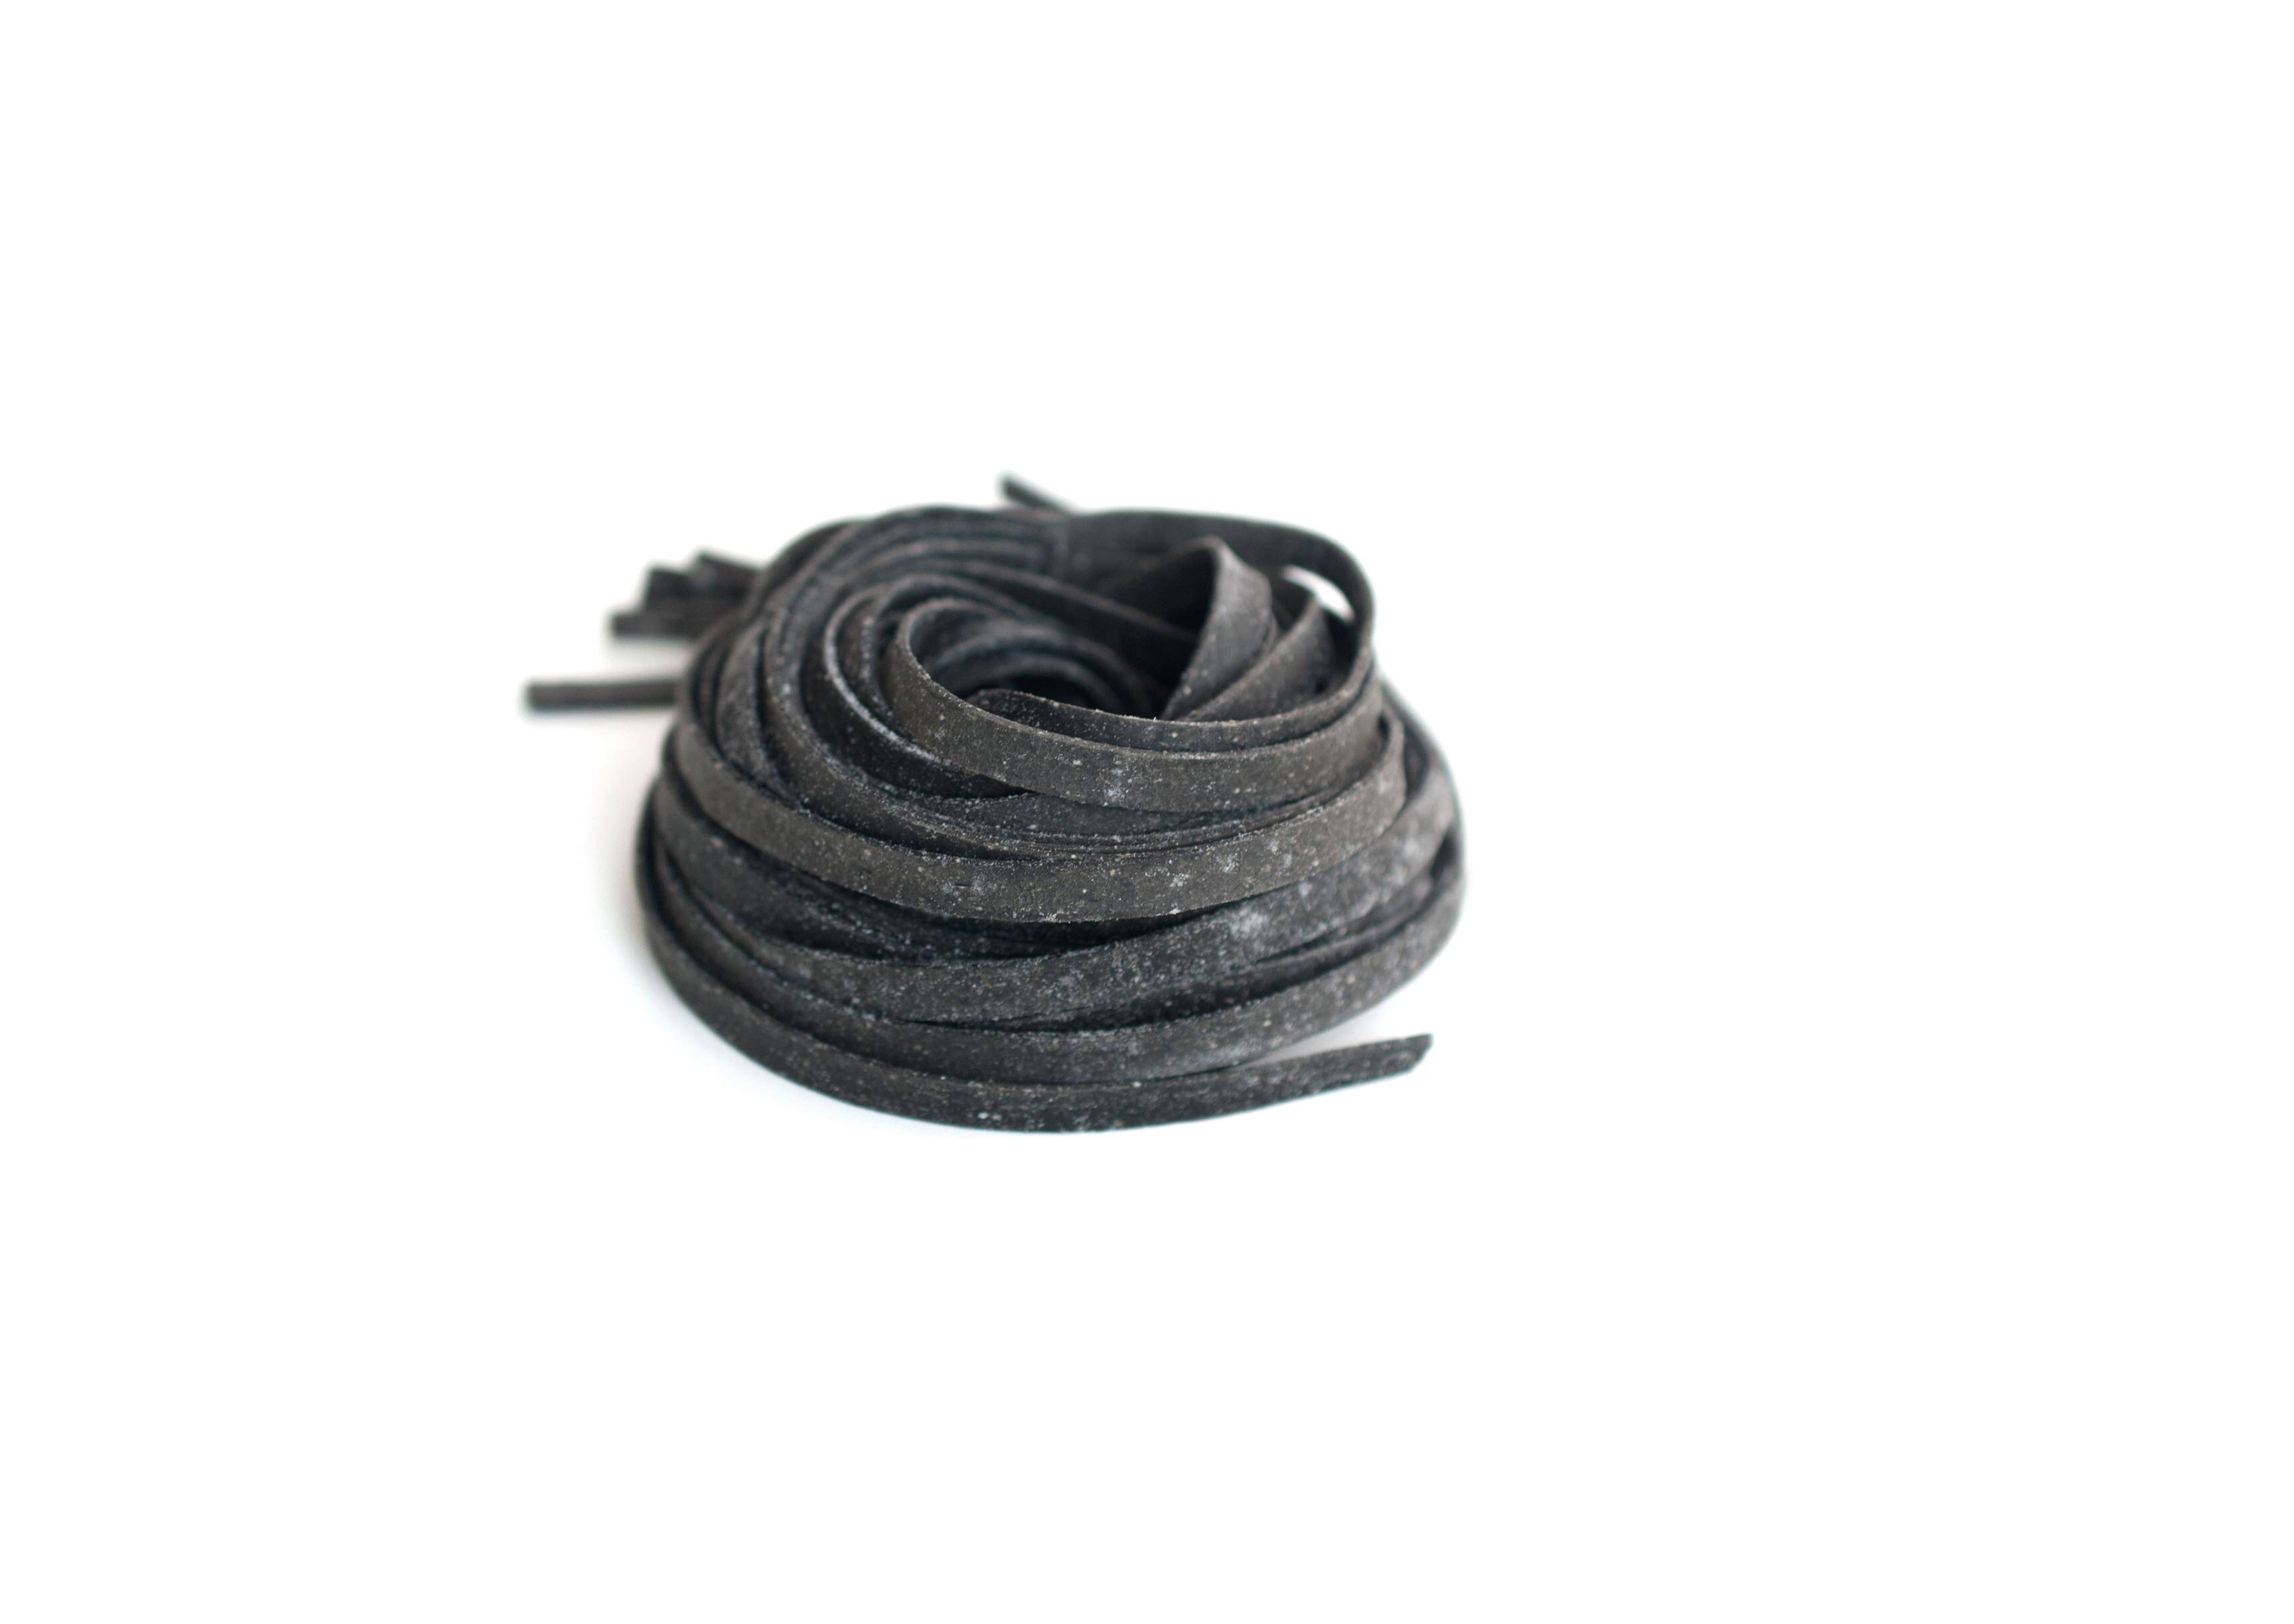 Makaron Tagliatelle czarny (6mm,100g/szt) 2kg/krt mroż.Perino